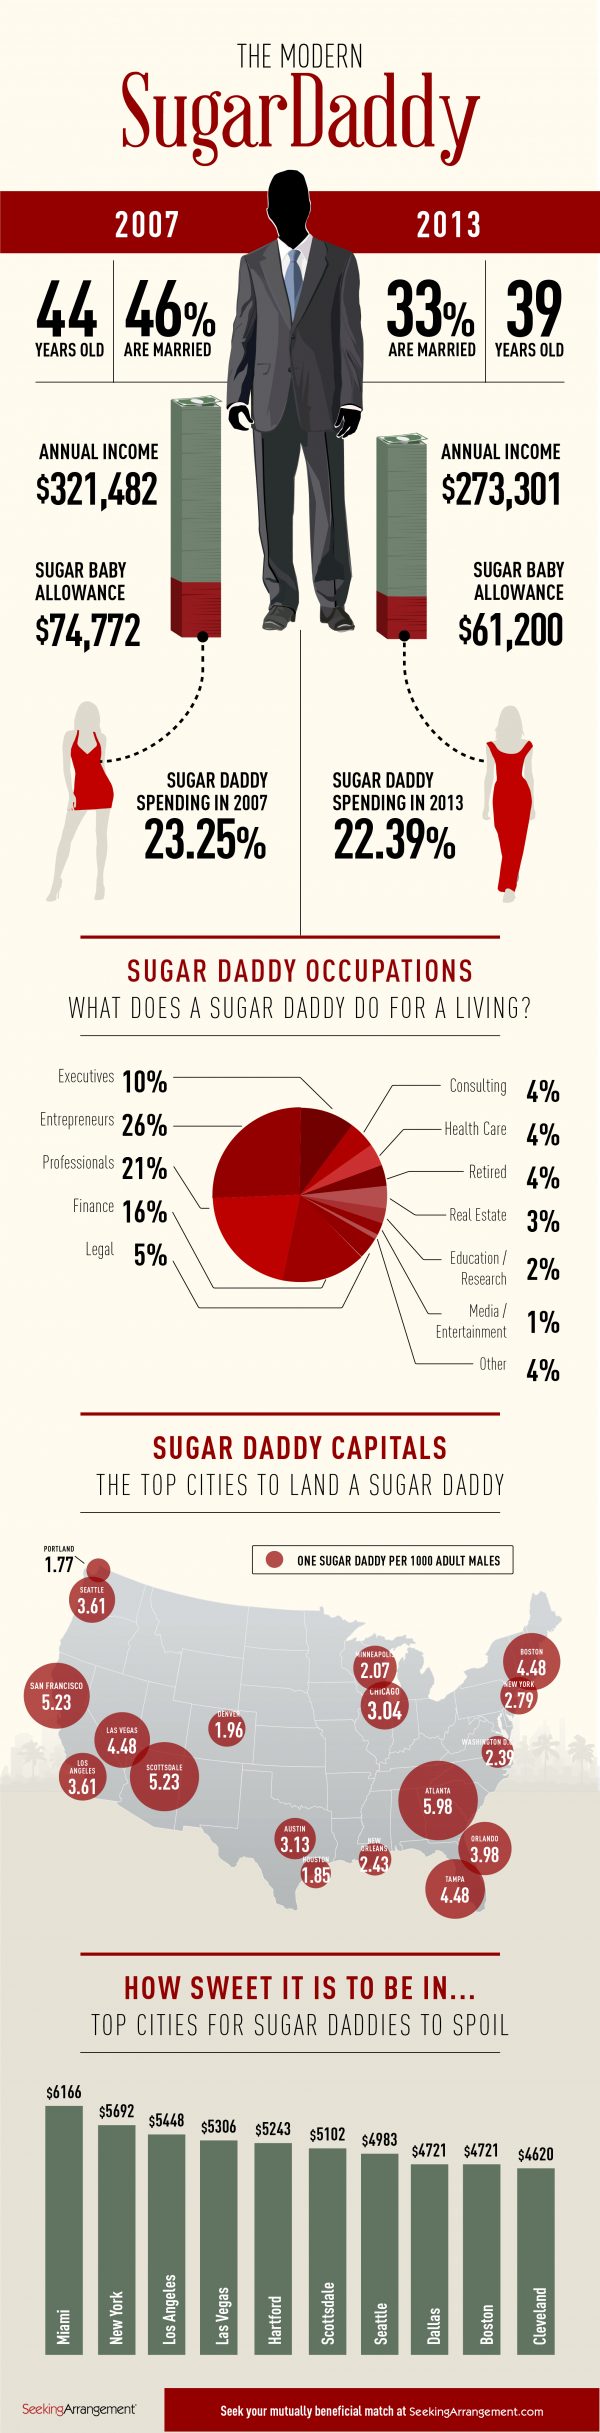 Sugar Daddy stats by SeekingArrangement's website